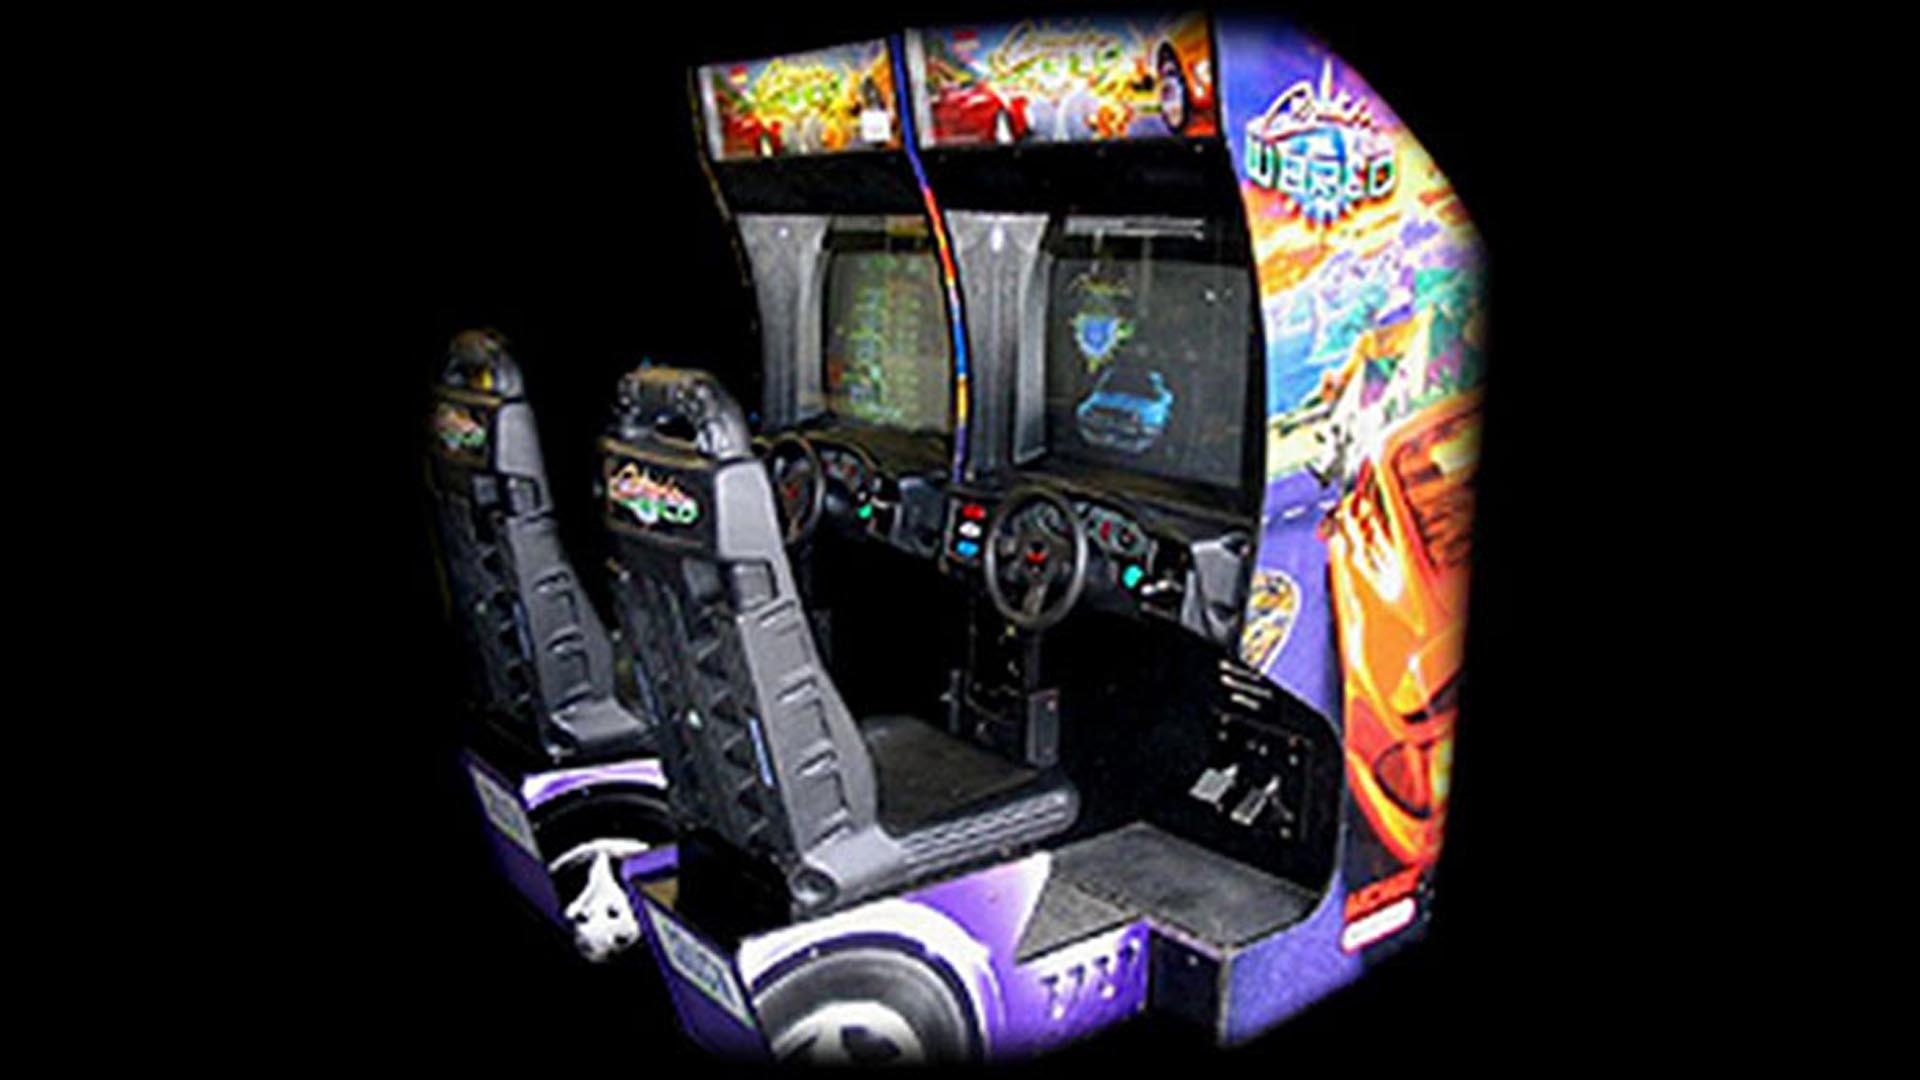 Cruis'n USA Arcade Driving Game